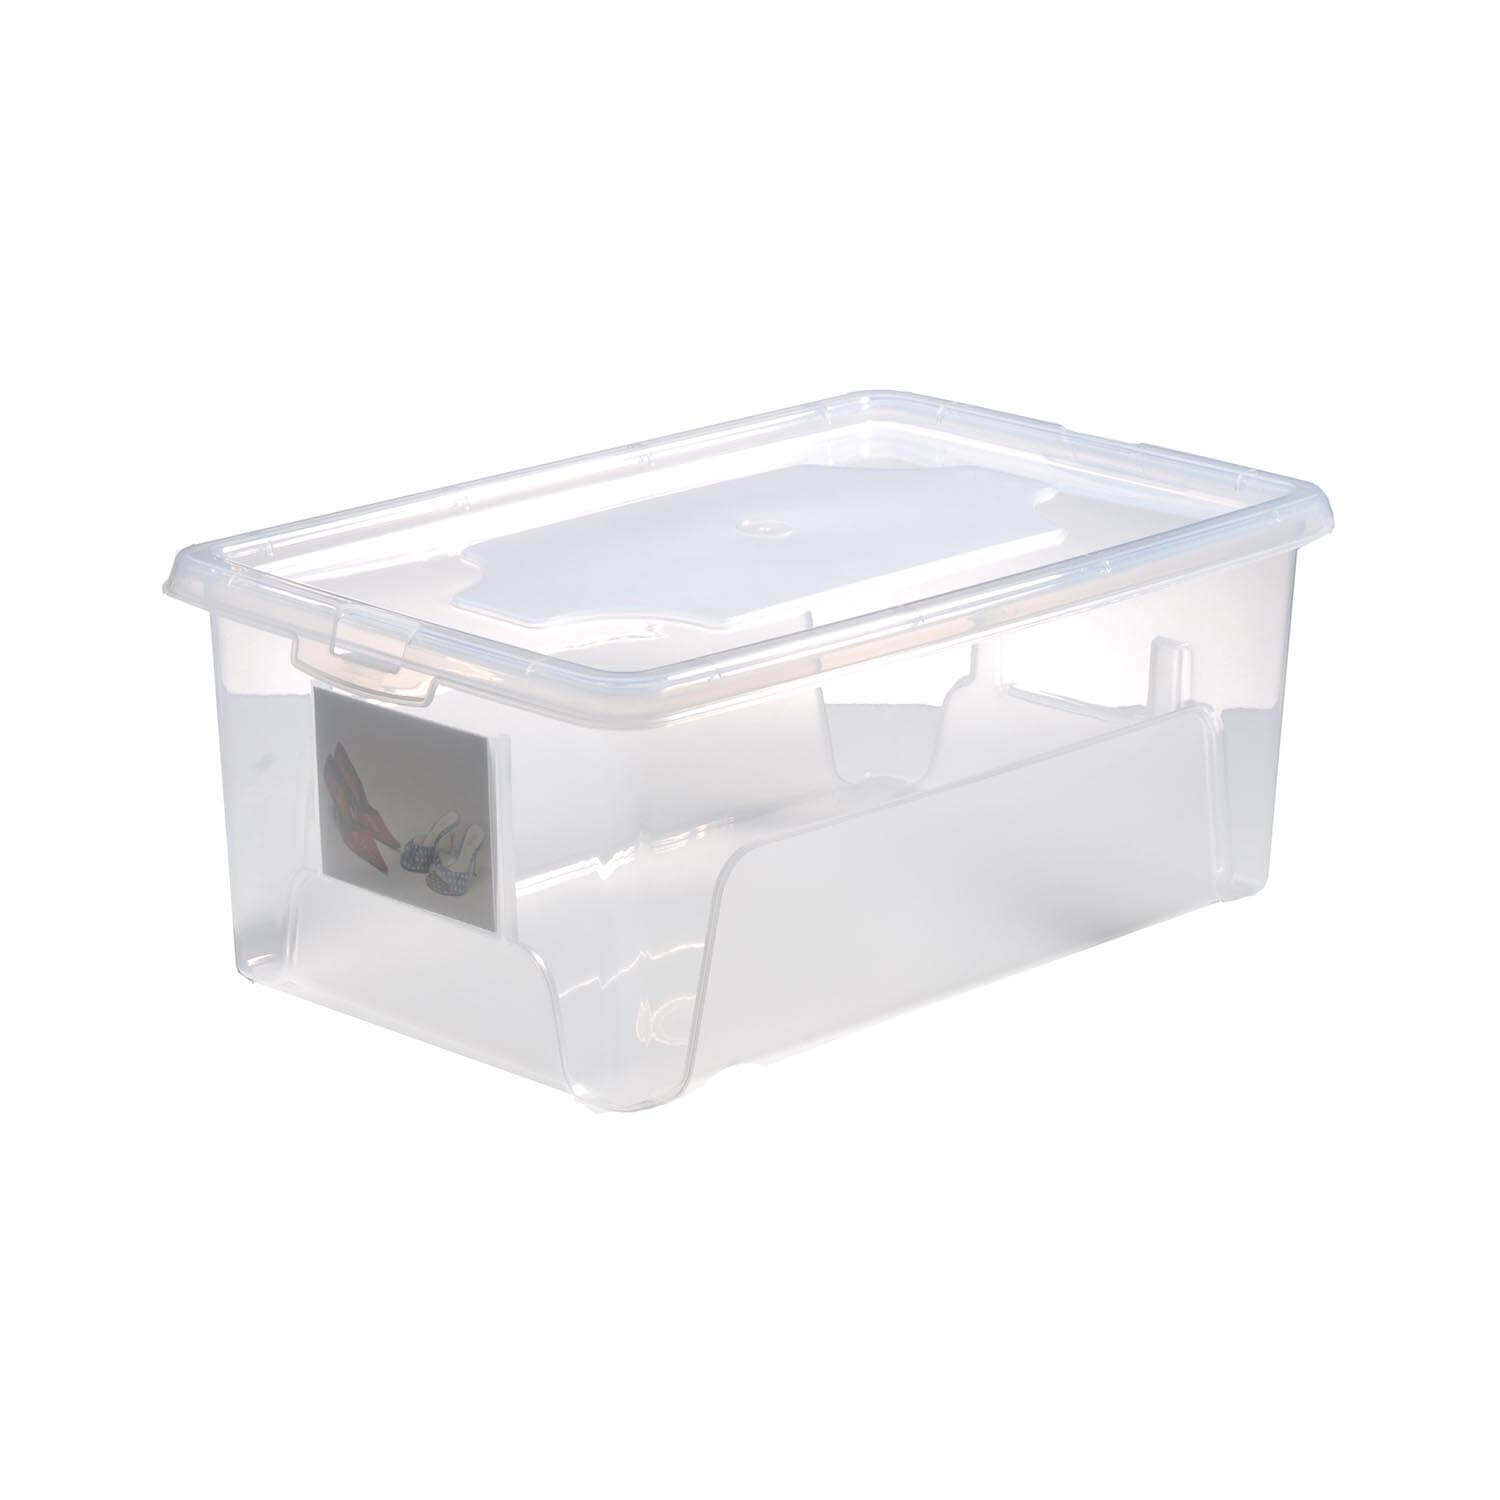 Aufbewahrungsbox "Easybox" 10 L in transparent, Kunststoffbox